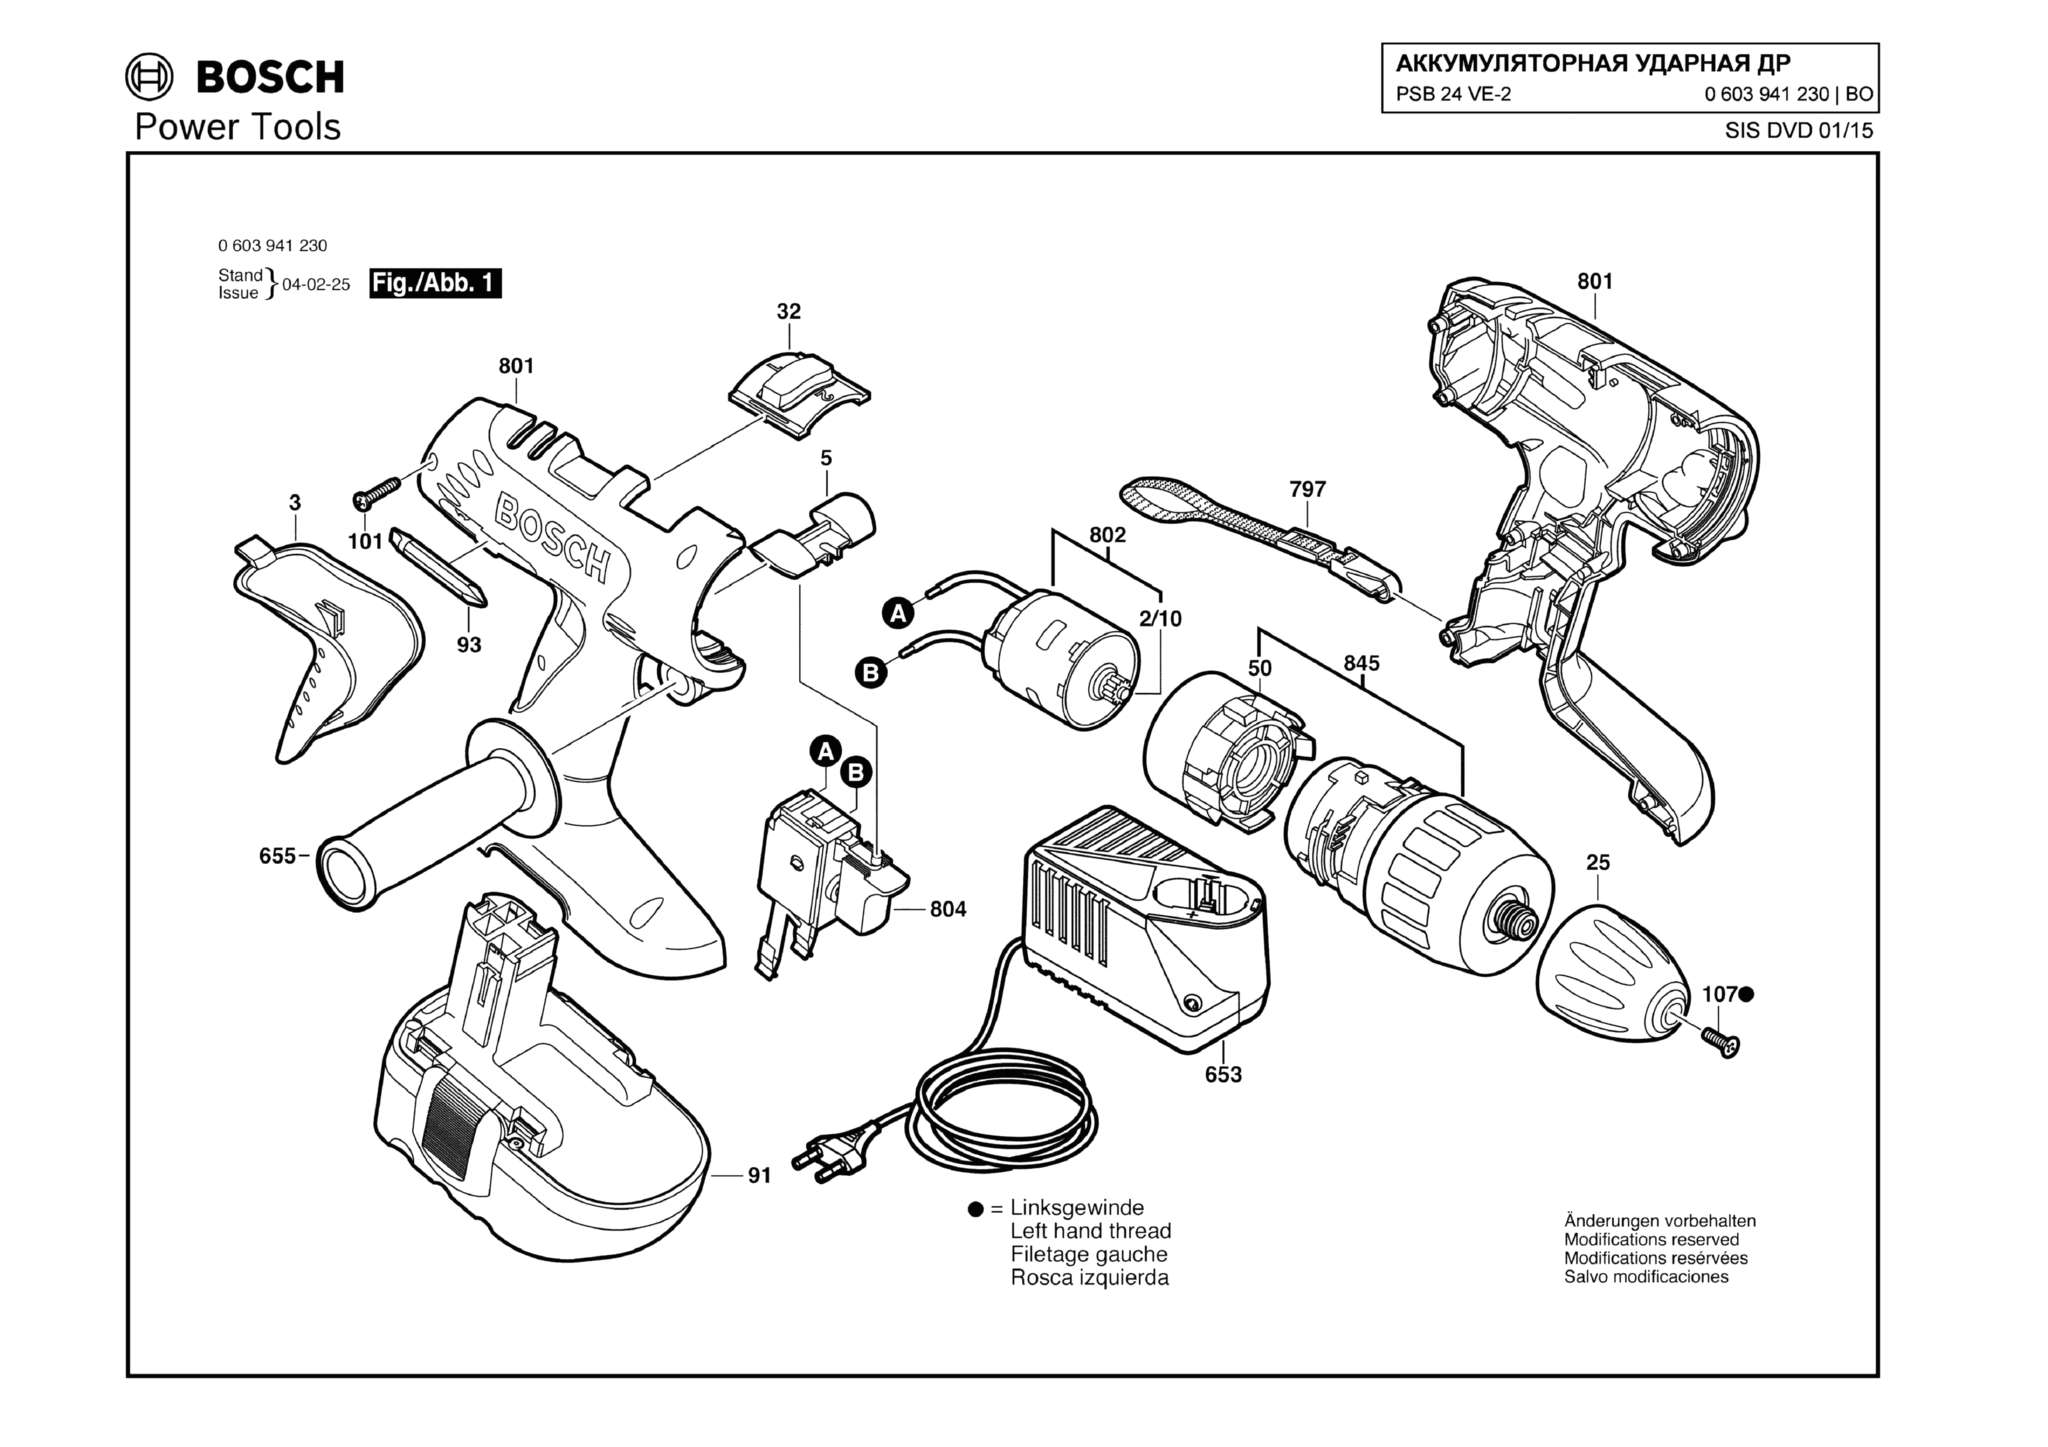 Запчасти, схема и деталировка Bosch PSB 24 VE-2 (ТИП 0603941230)